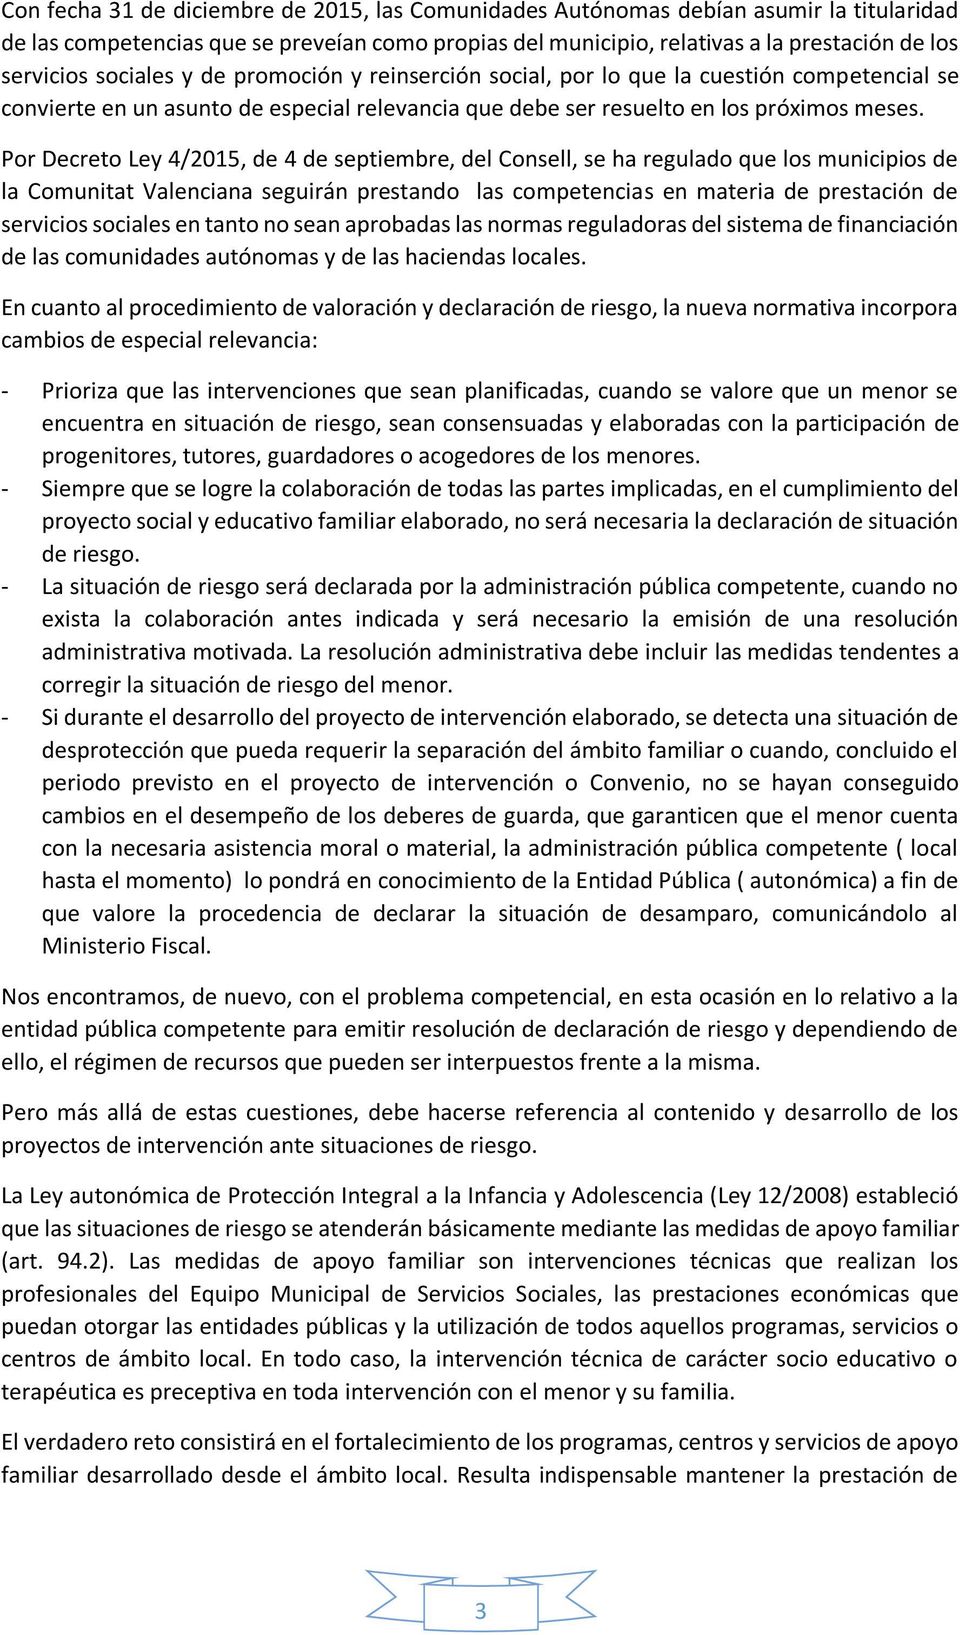 Por Decreto Ley 4/2015, de 4 de septiembre, del Consell, se ha regulado que los municipios de la Comunitat Valenciana seguirán prestando las competencias en materia de prestación de servicios